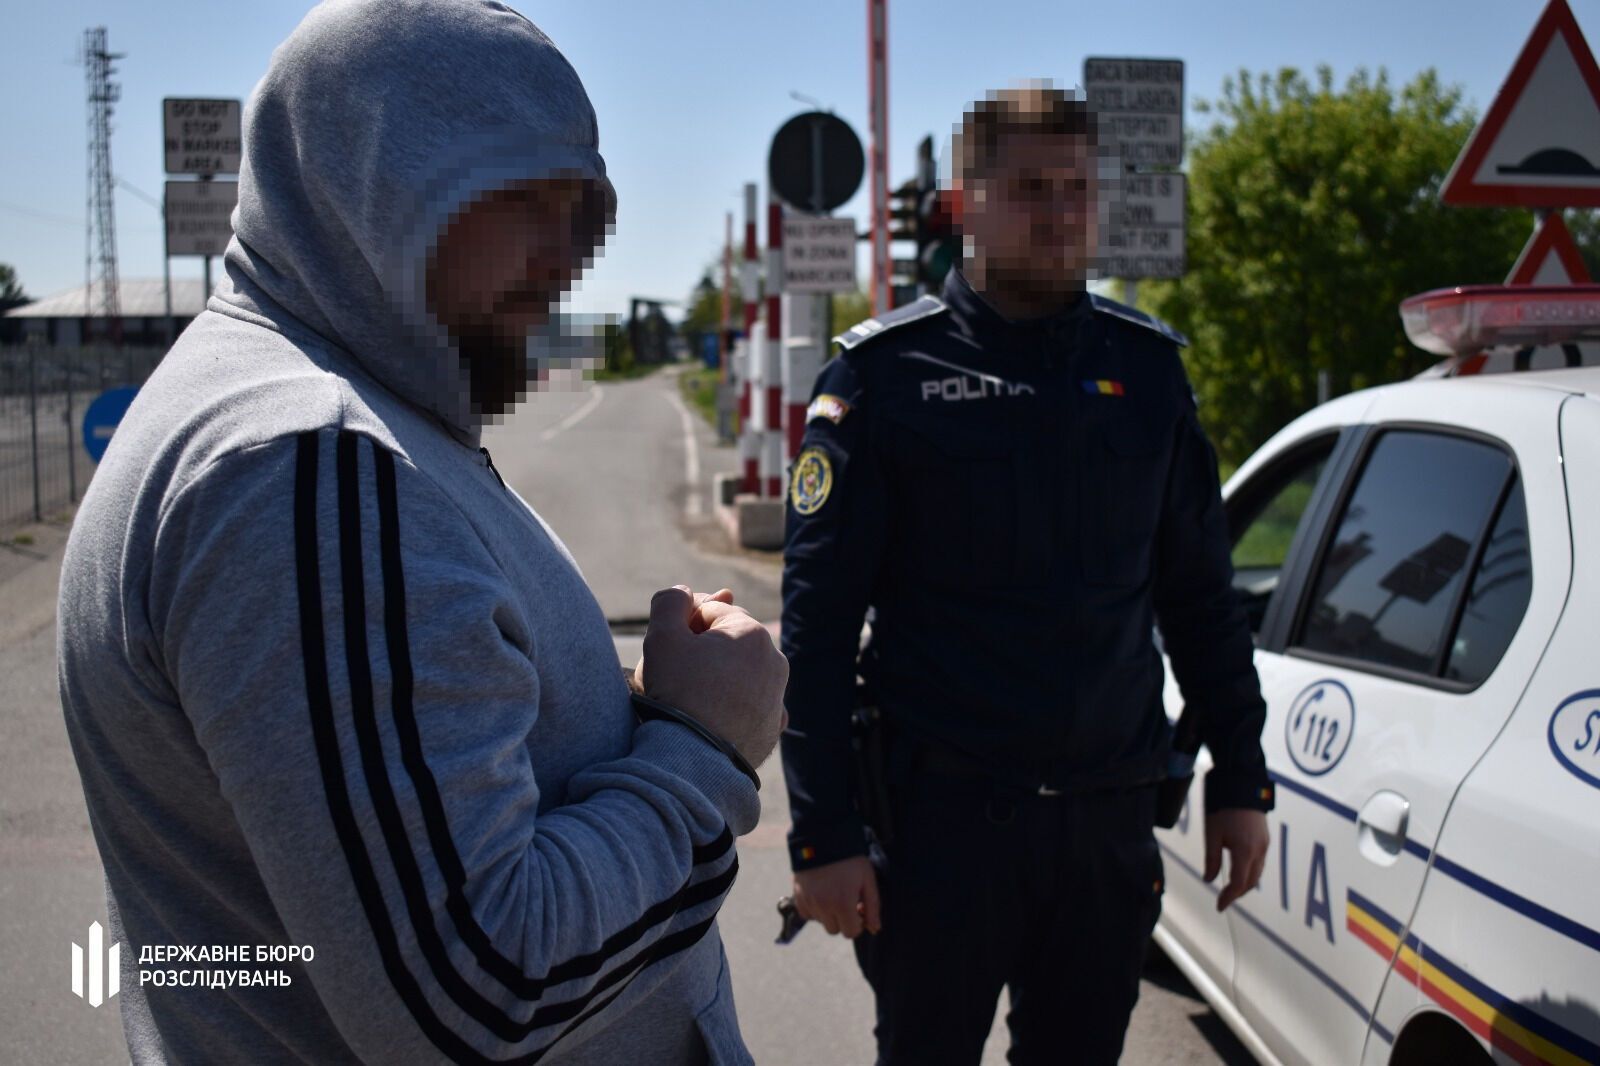 Румыния передала Украине организатора международного наркосиндиката. Фото и видео